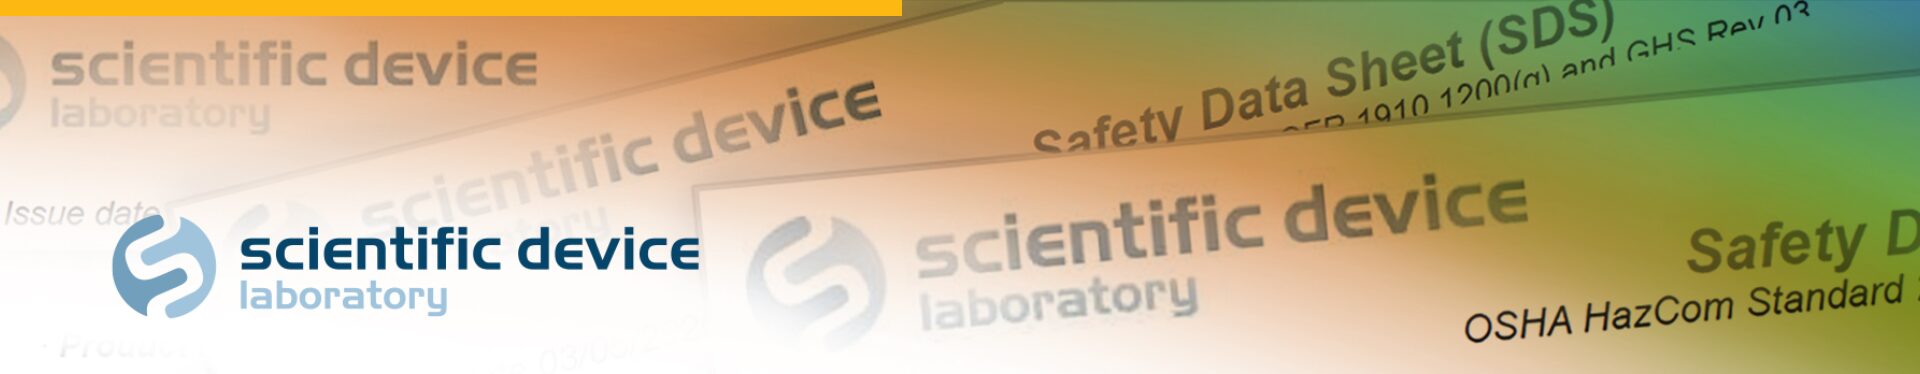 Scientific Device Laboratory